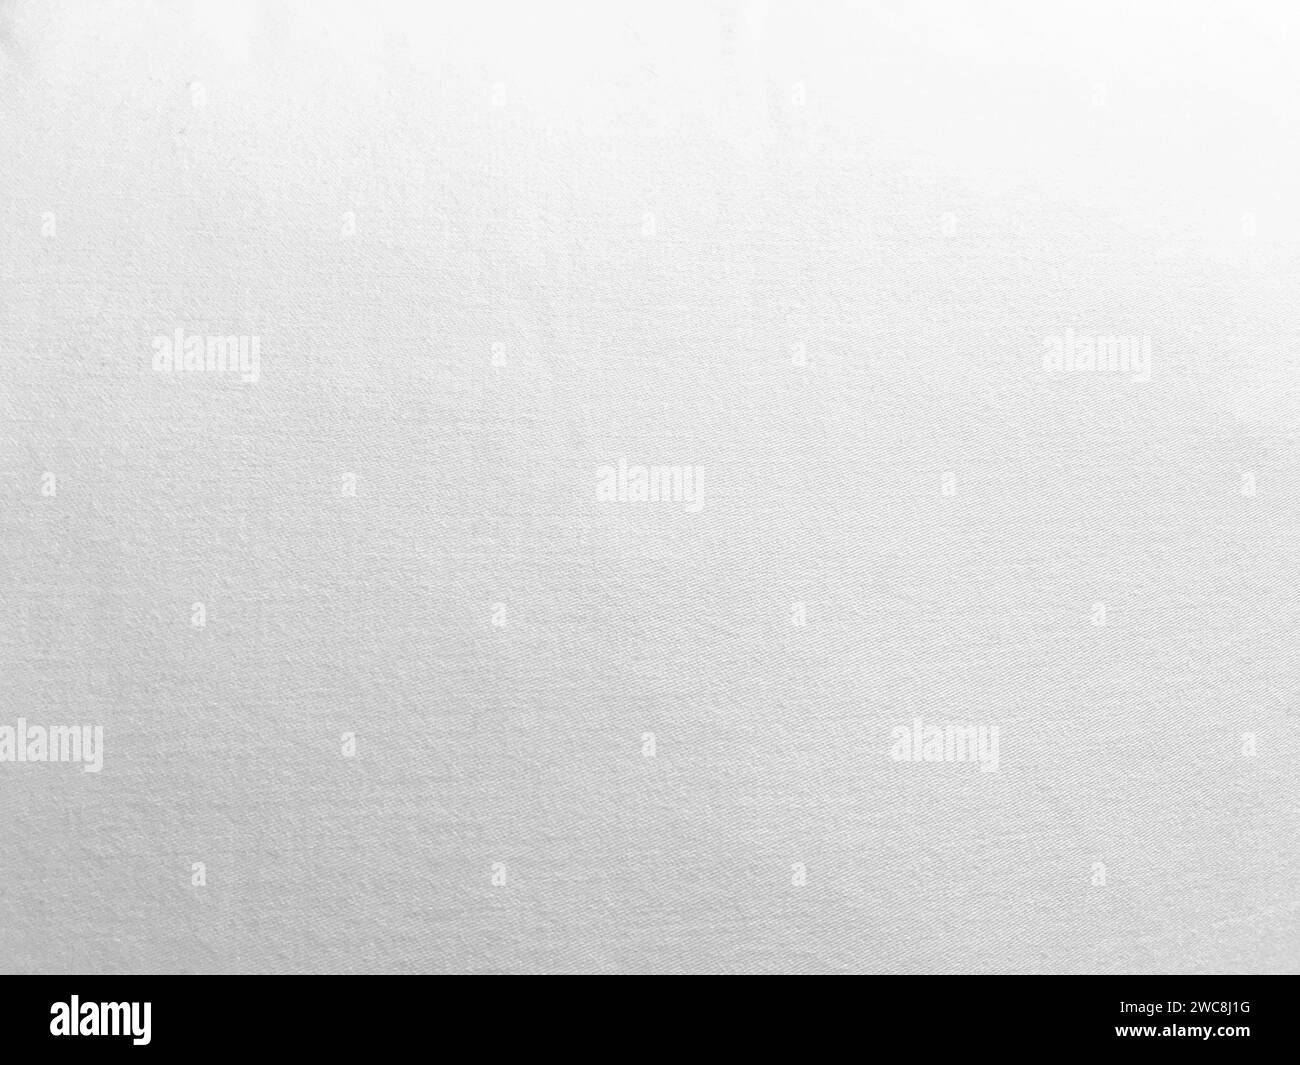 Uno sfondo in tessuto bianco immacolato che mostra la lussuosa texture della seta, crea un'atmosfera astratta e morbida, perfetta per un design di alto livello. Foto Stock